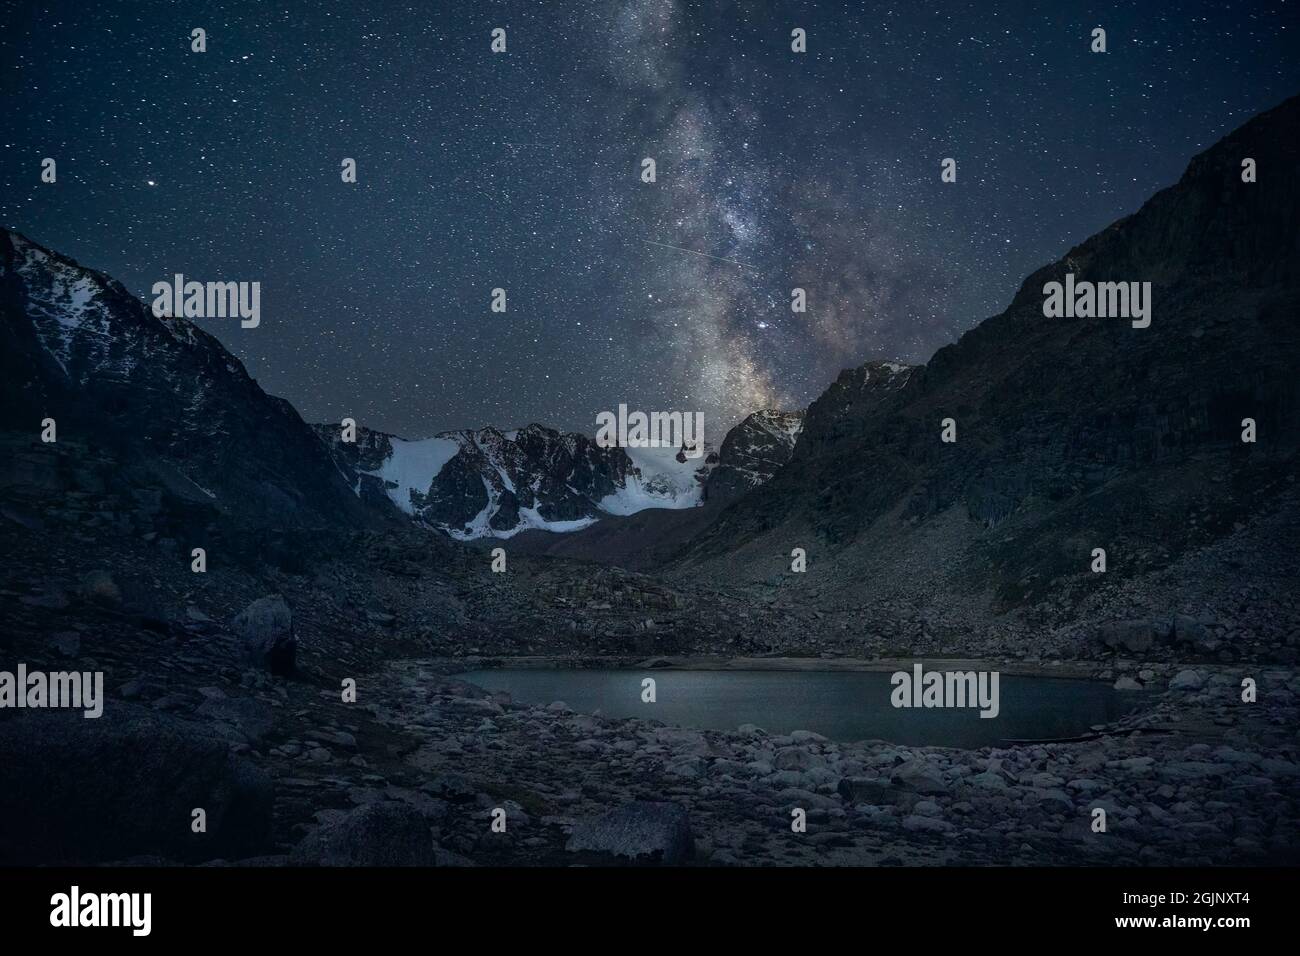 Voie lactée et ciel étoilé de nuit au lac de montagne avec des sommets enneigés Banque D'Images